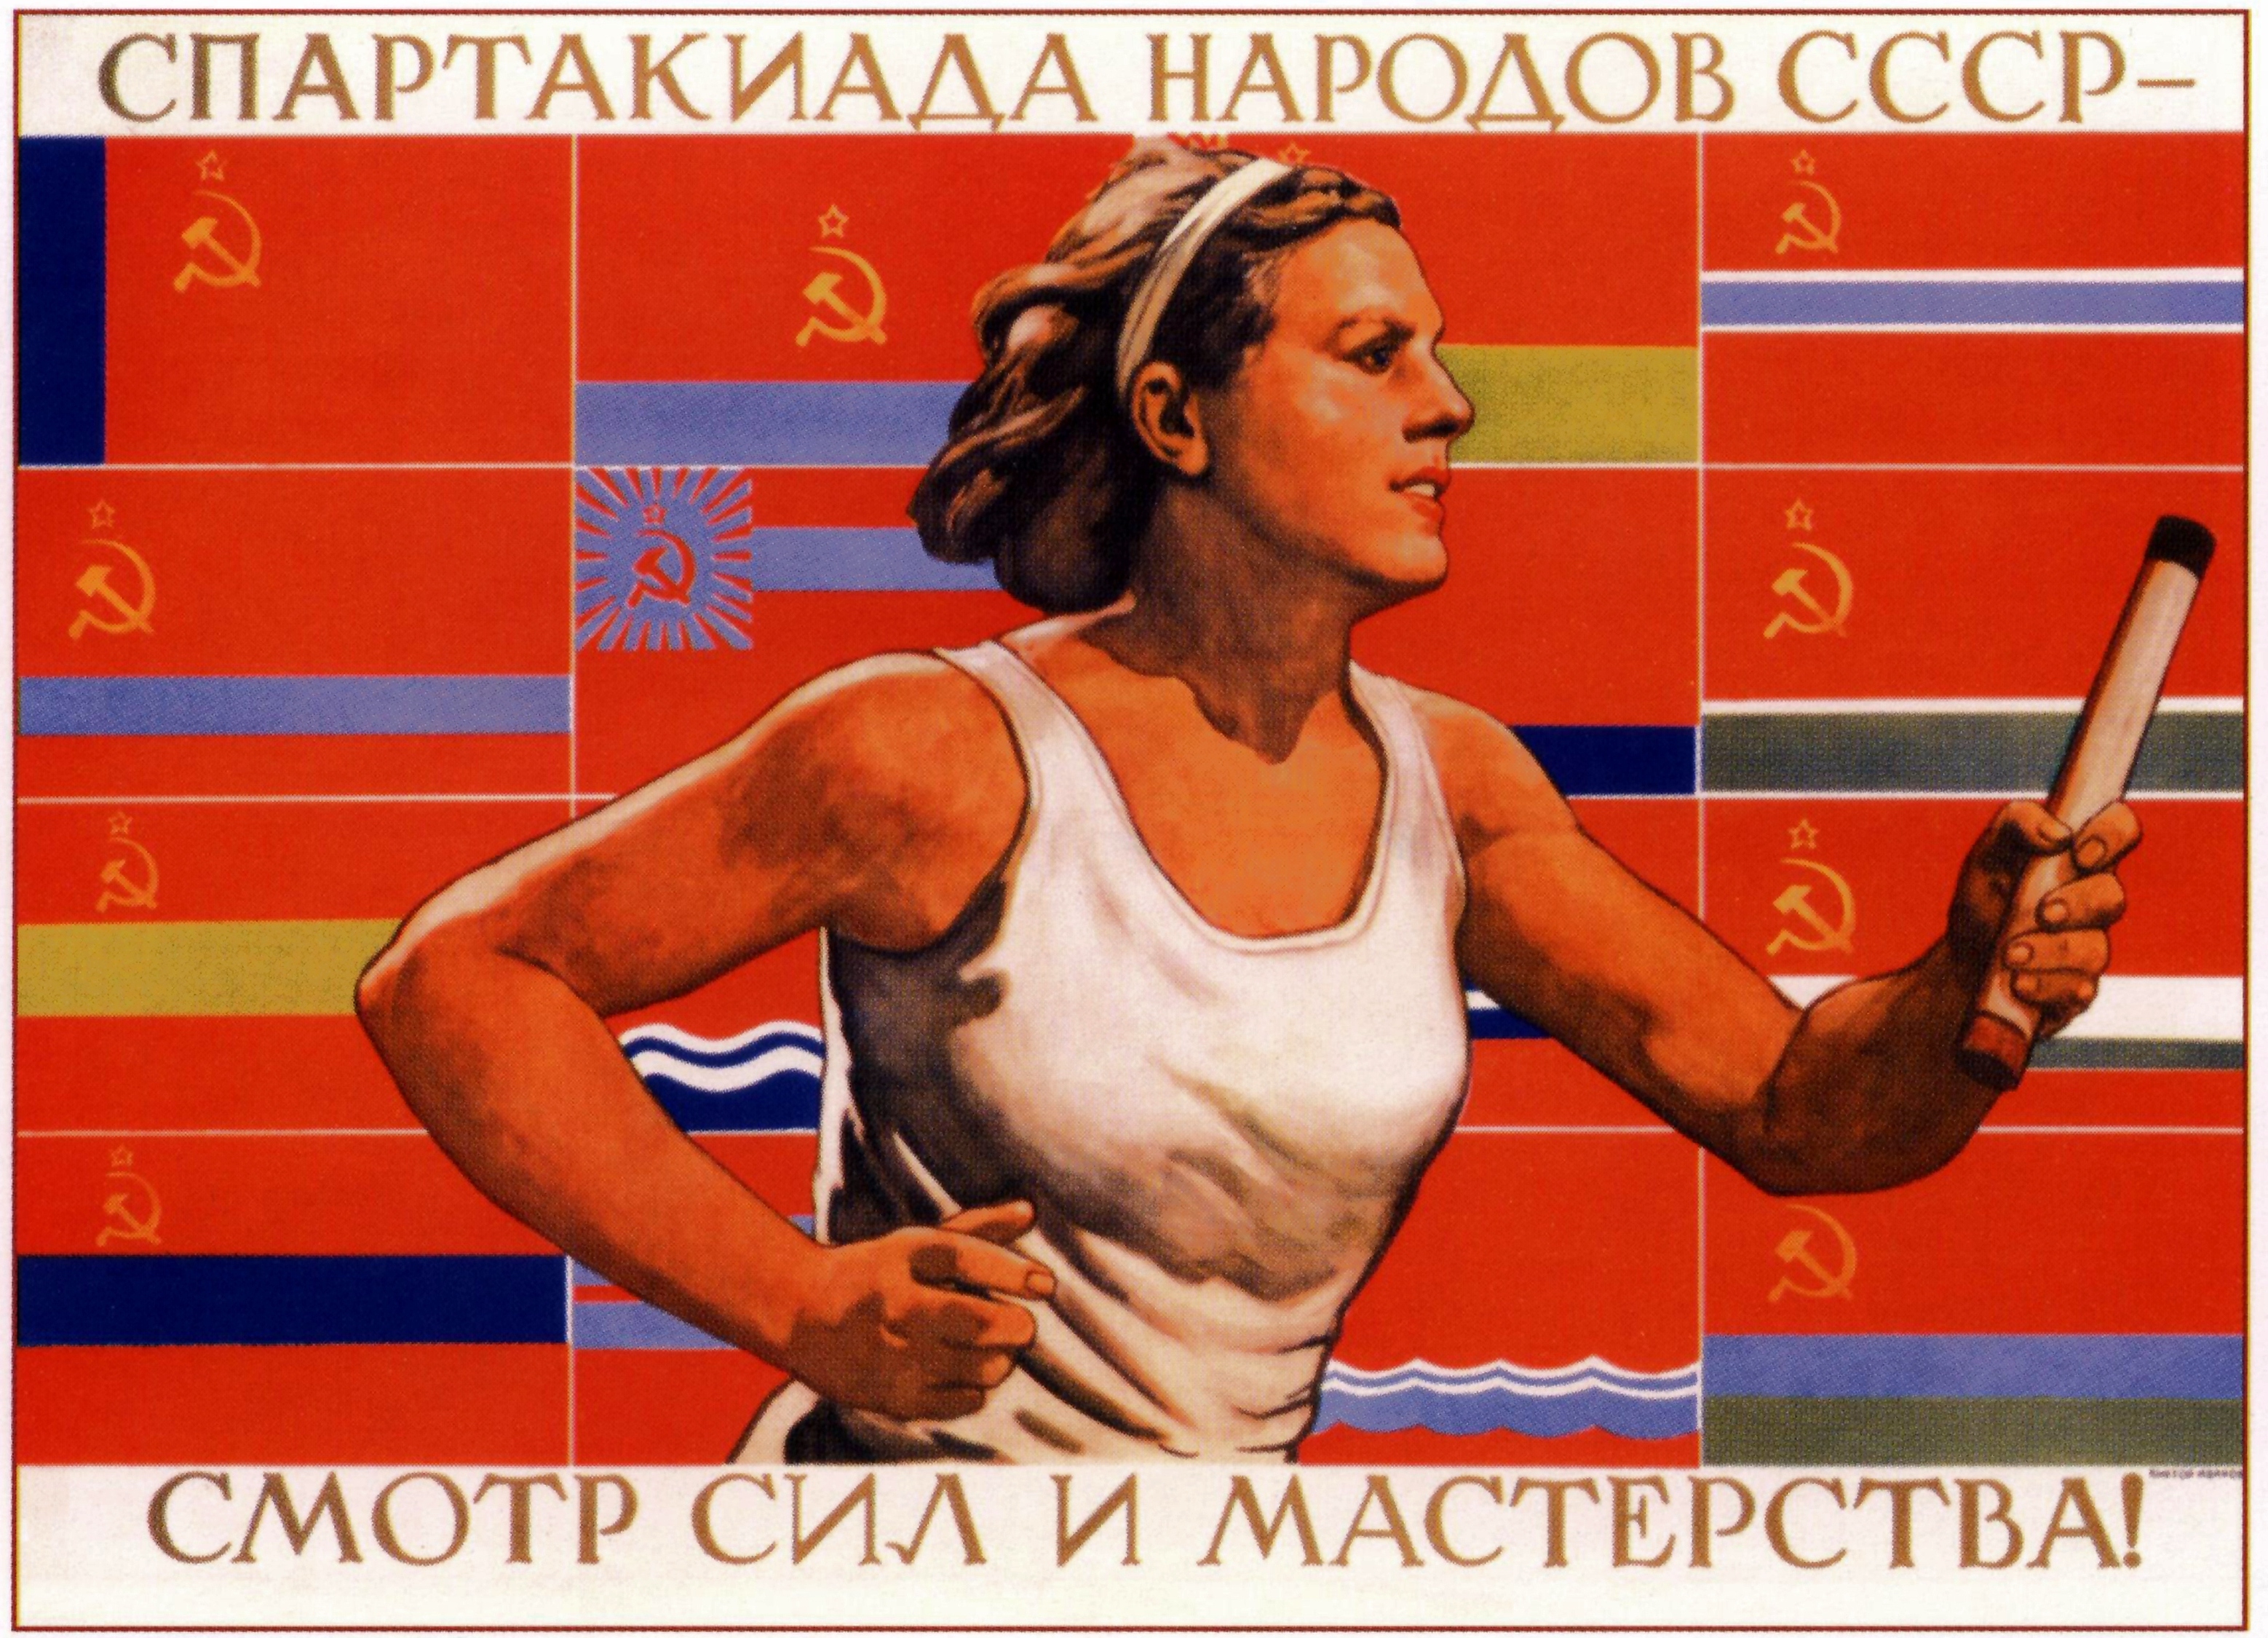 The Sport Girl [1928]